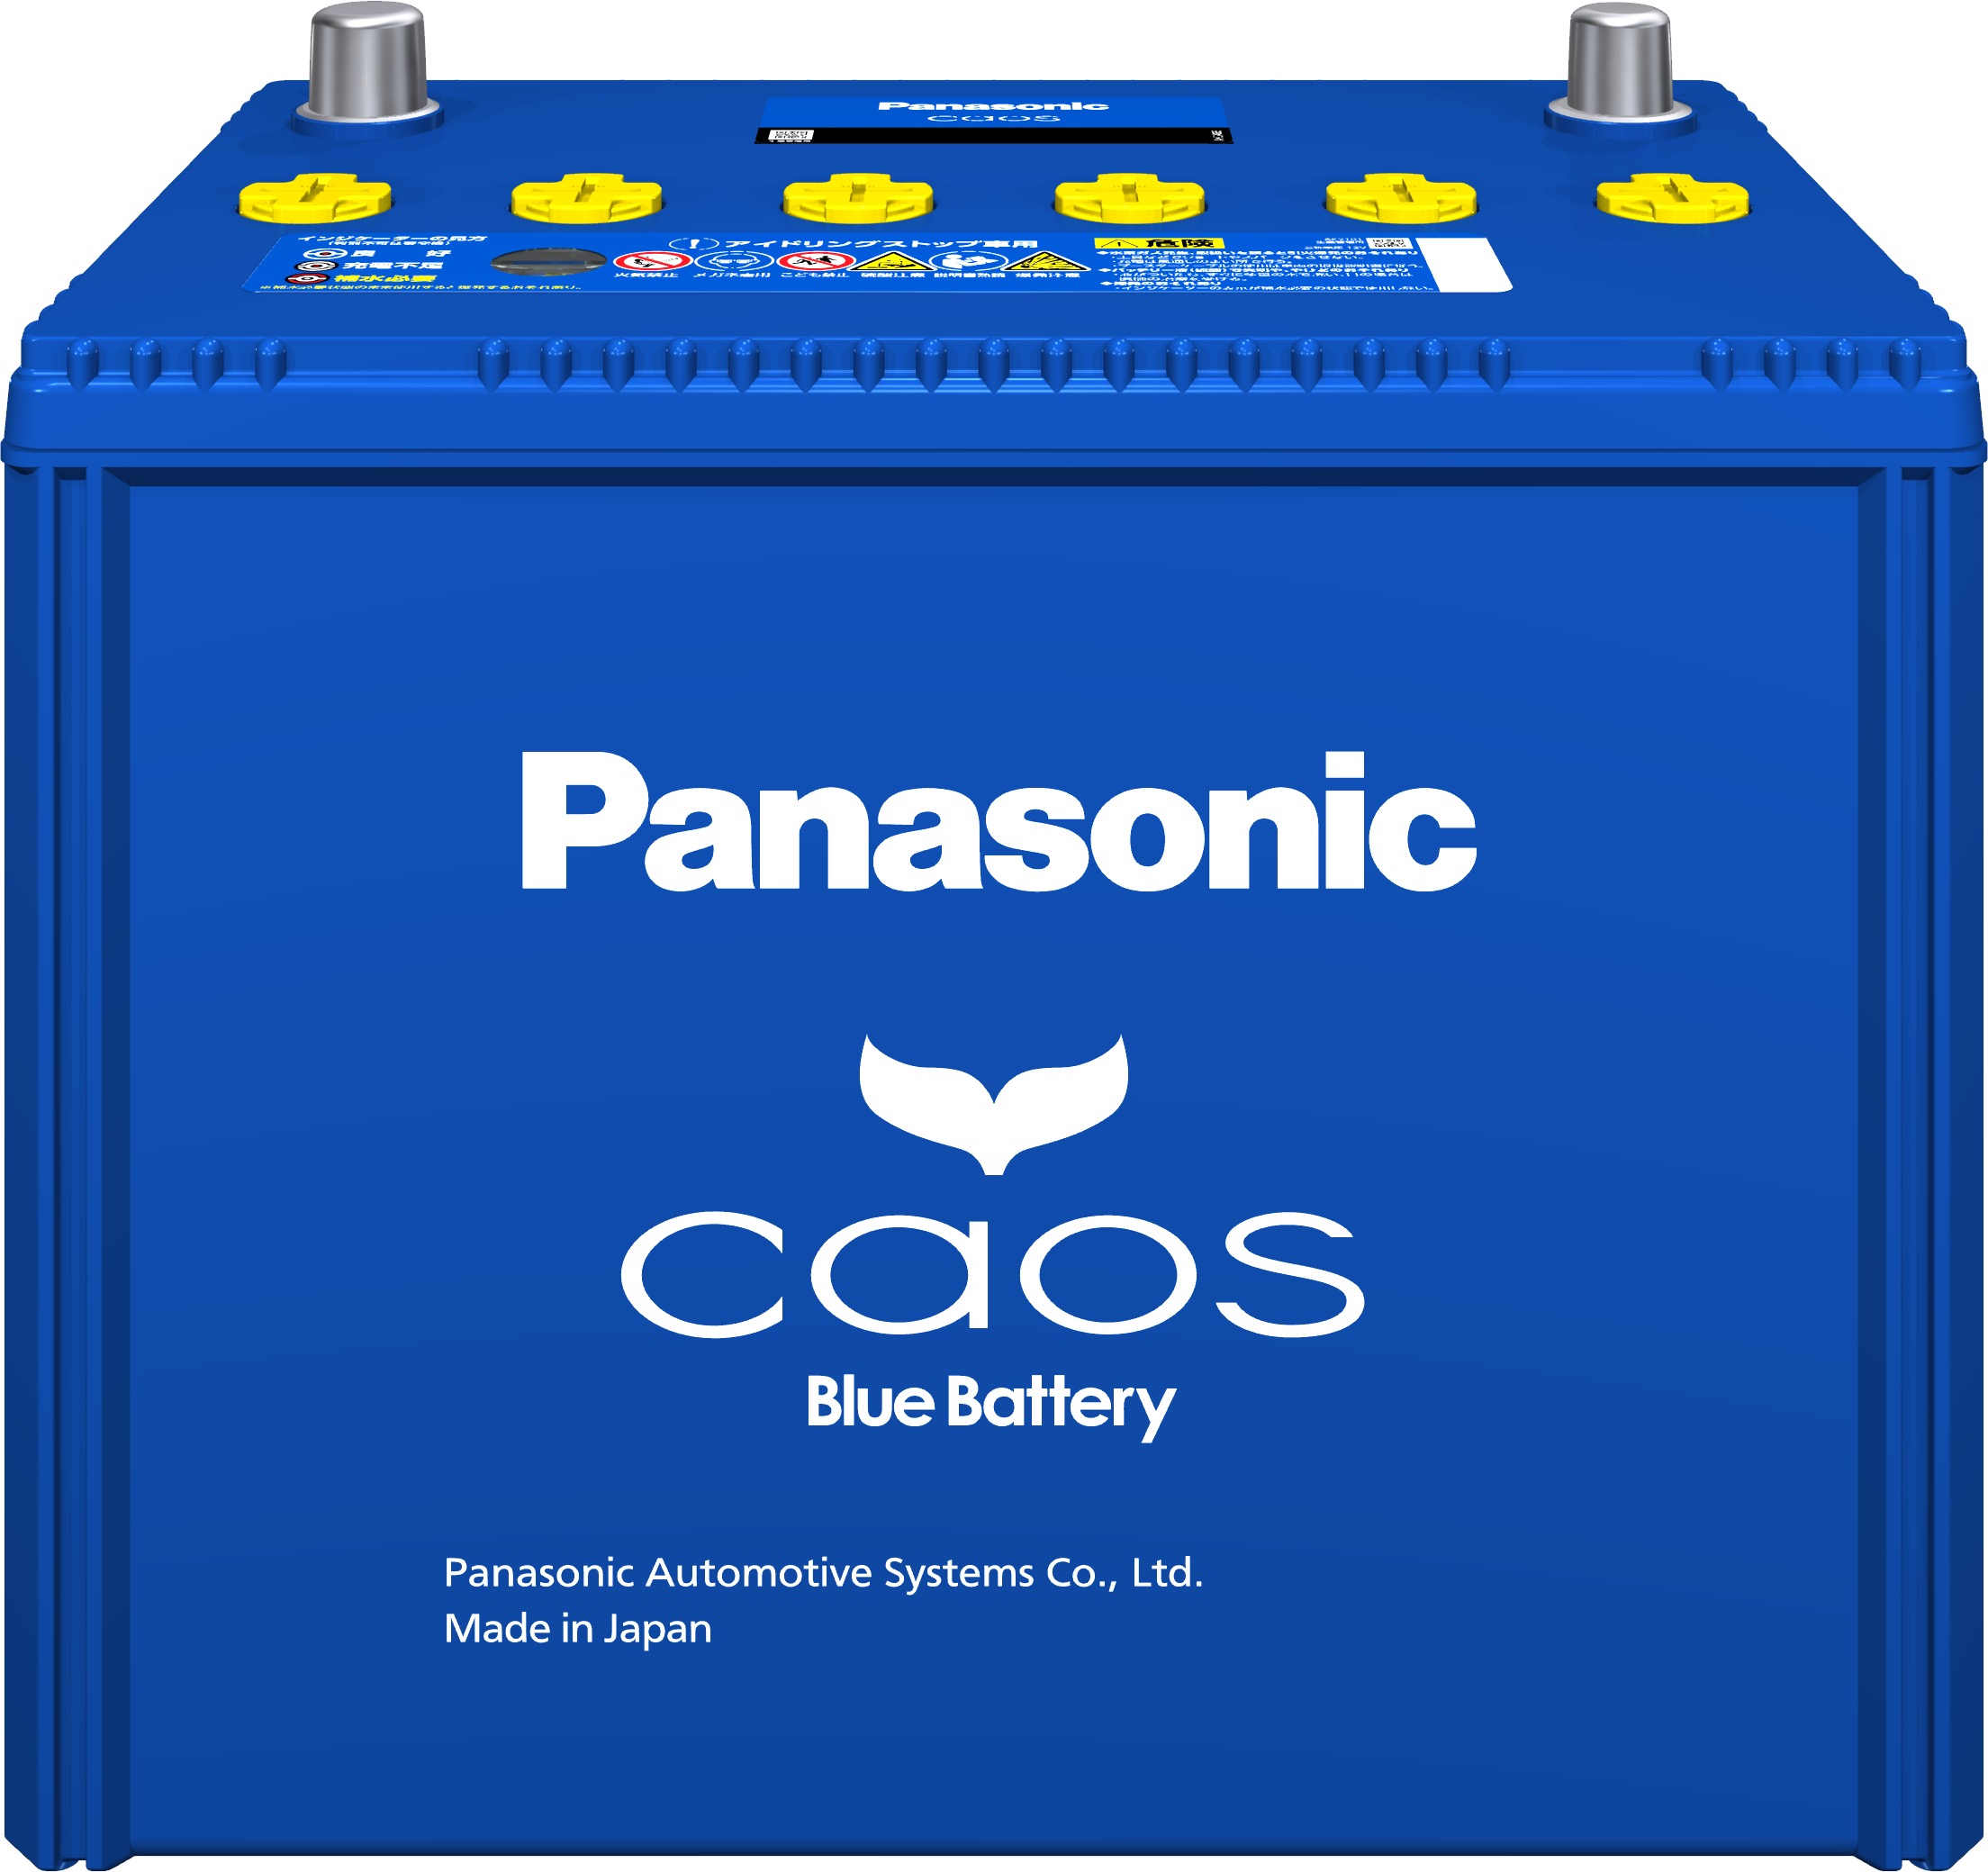 メンテナンス用品パナソニック カオス S-115 バッテリー